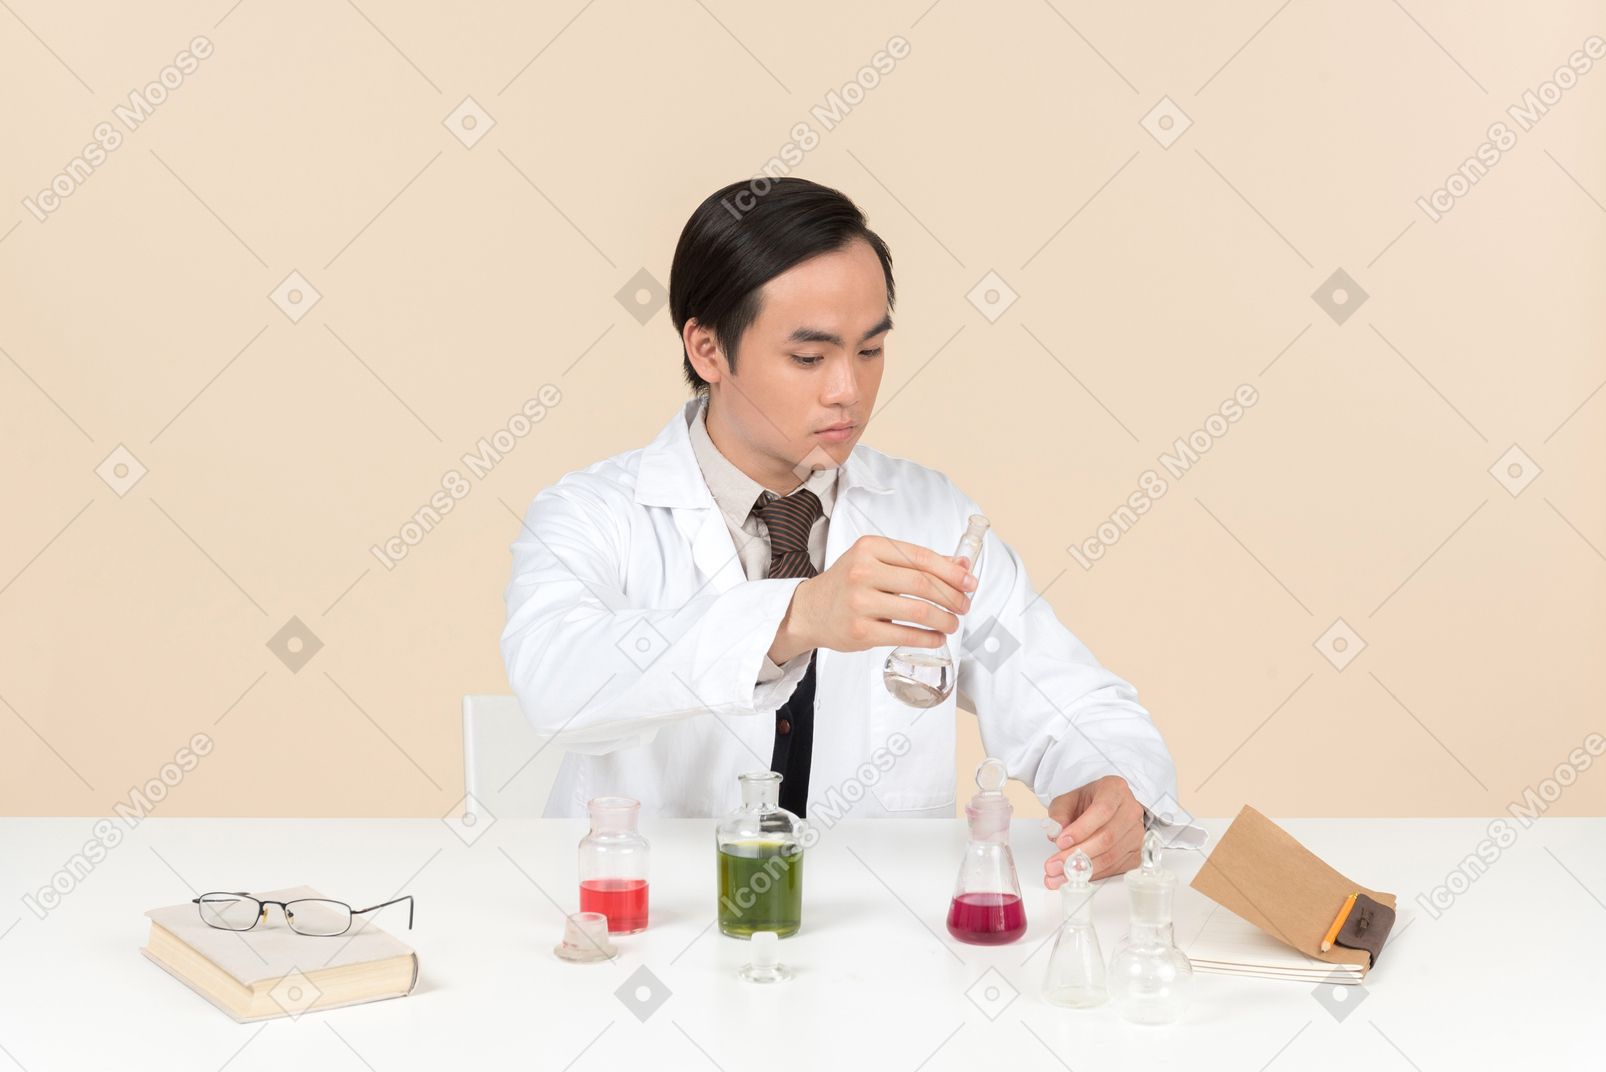 Un científico asiático en una bata blanca trabajando en un experimento químico